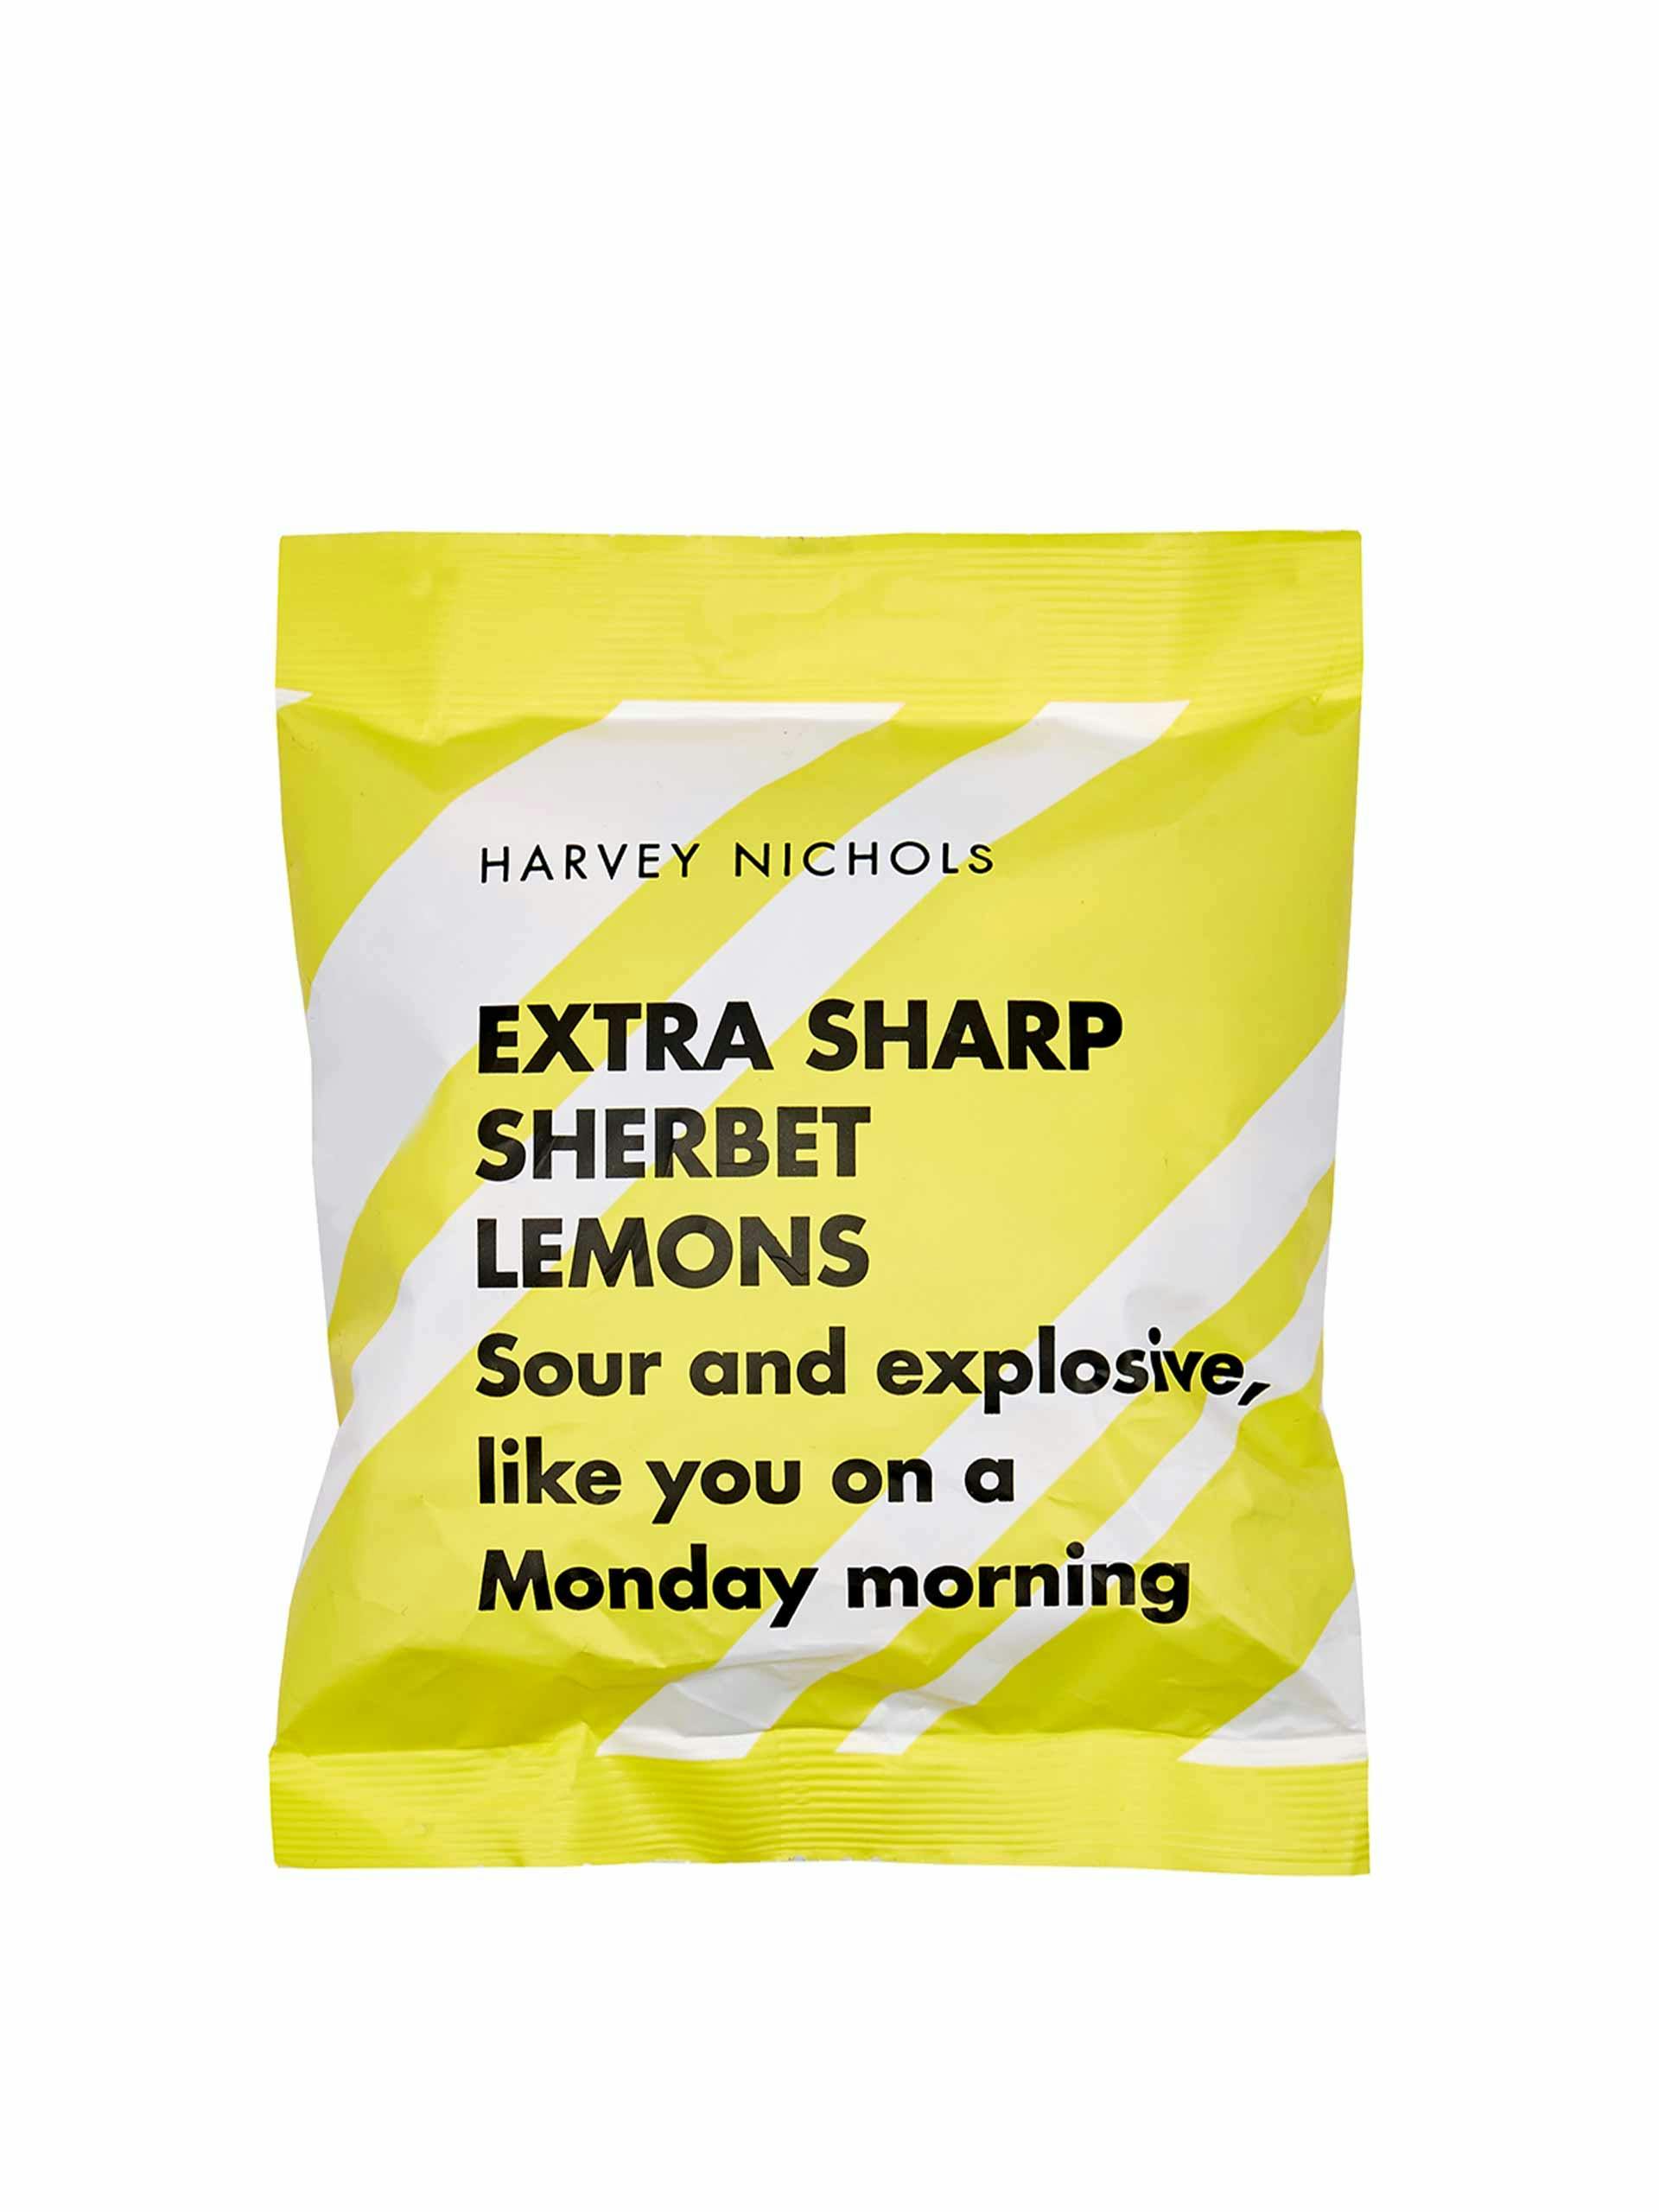 Extra sharp sherbet lemons